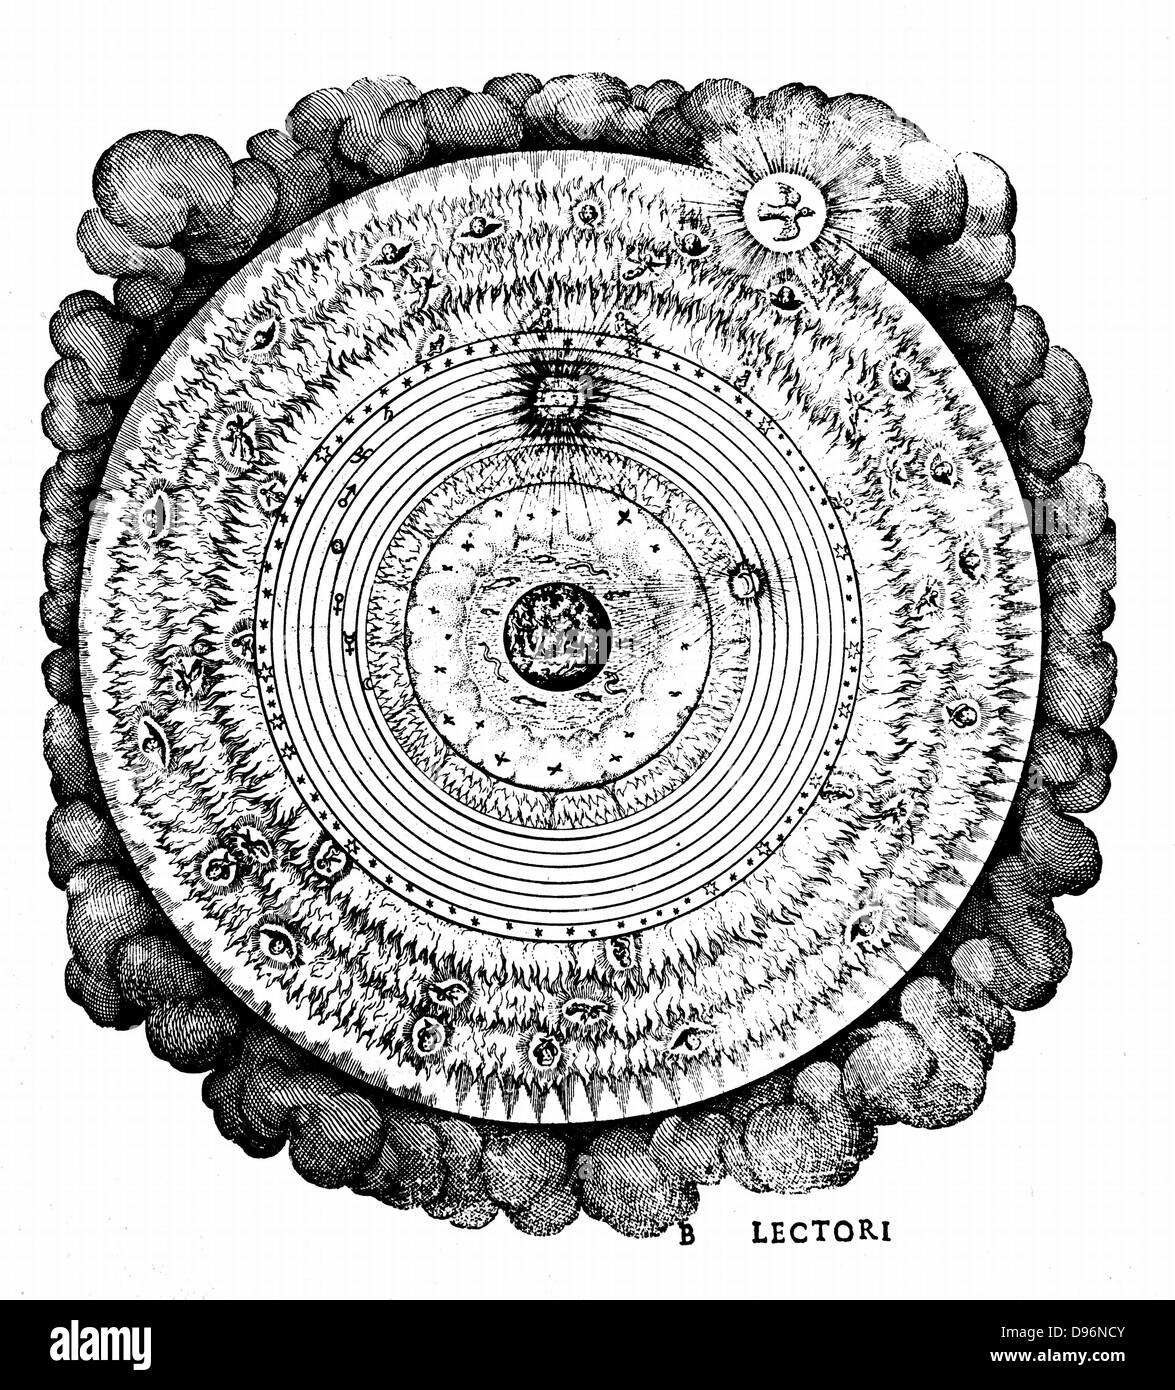 Univers géocentrique montrant la terre entourée par les domaines de l'eau, l'air et le feu, et par les sphères de la Lune, le soleil et les planètes et la sphère des étoiles fixes. Au-delà de ces mensonges le ciel avec les hiérarchies des anges et de la demeure de Dieu, représentée ici par la colombe du Saint Esprit. Robert Fludd de 'Ultriusque... cosmi historia", Oppenheim, 1617-1619. Gravure Banque D'Images